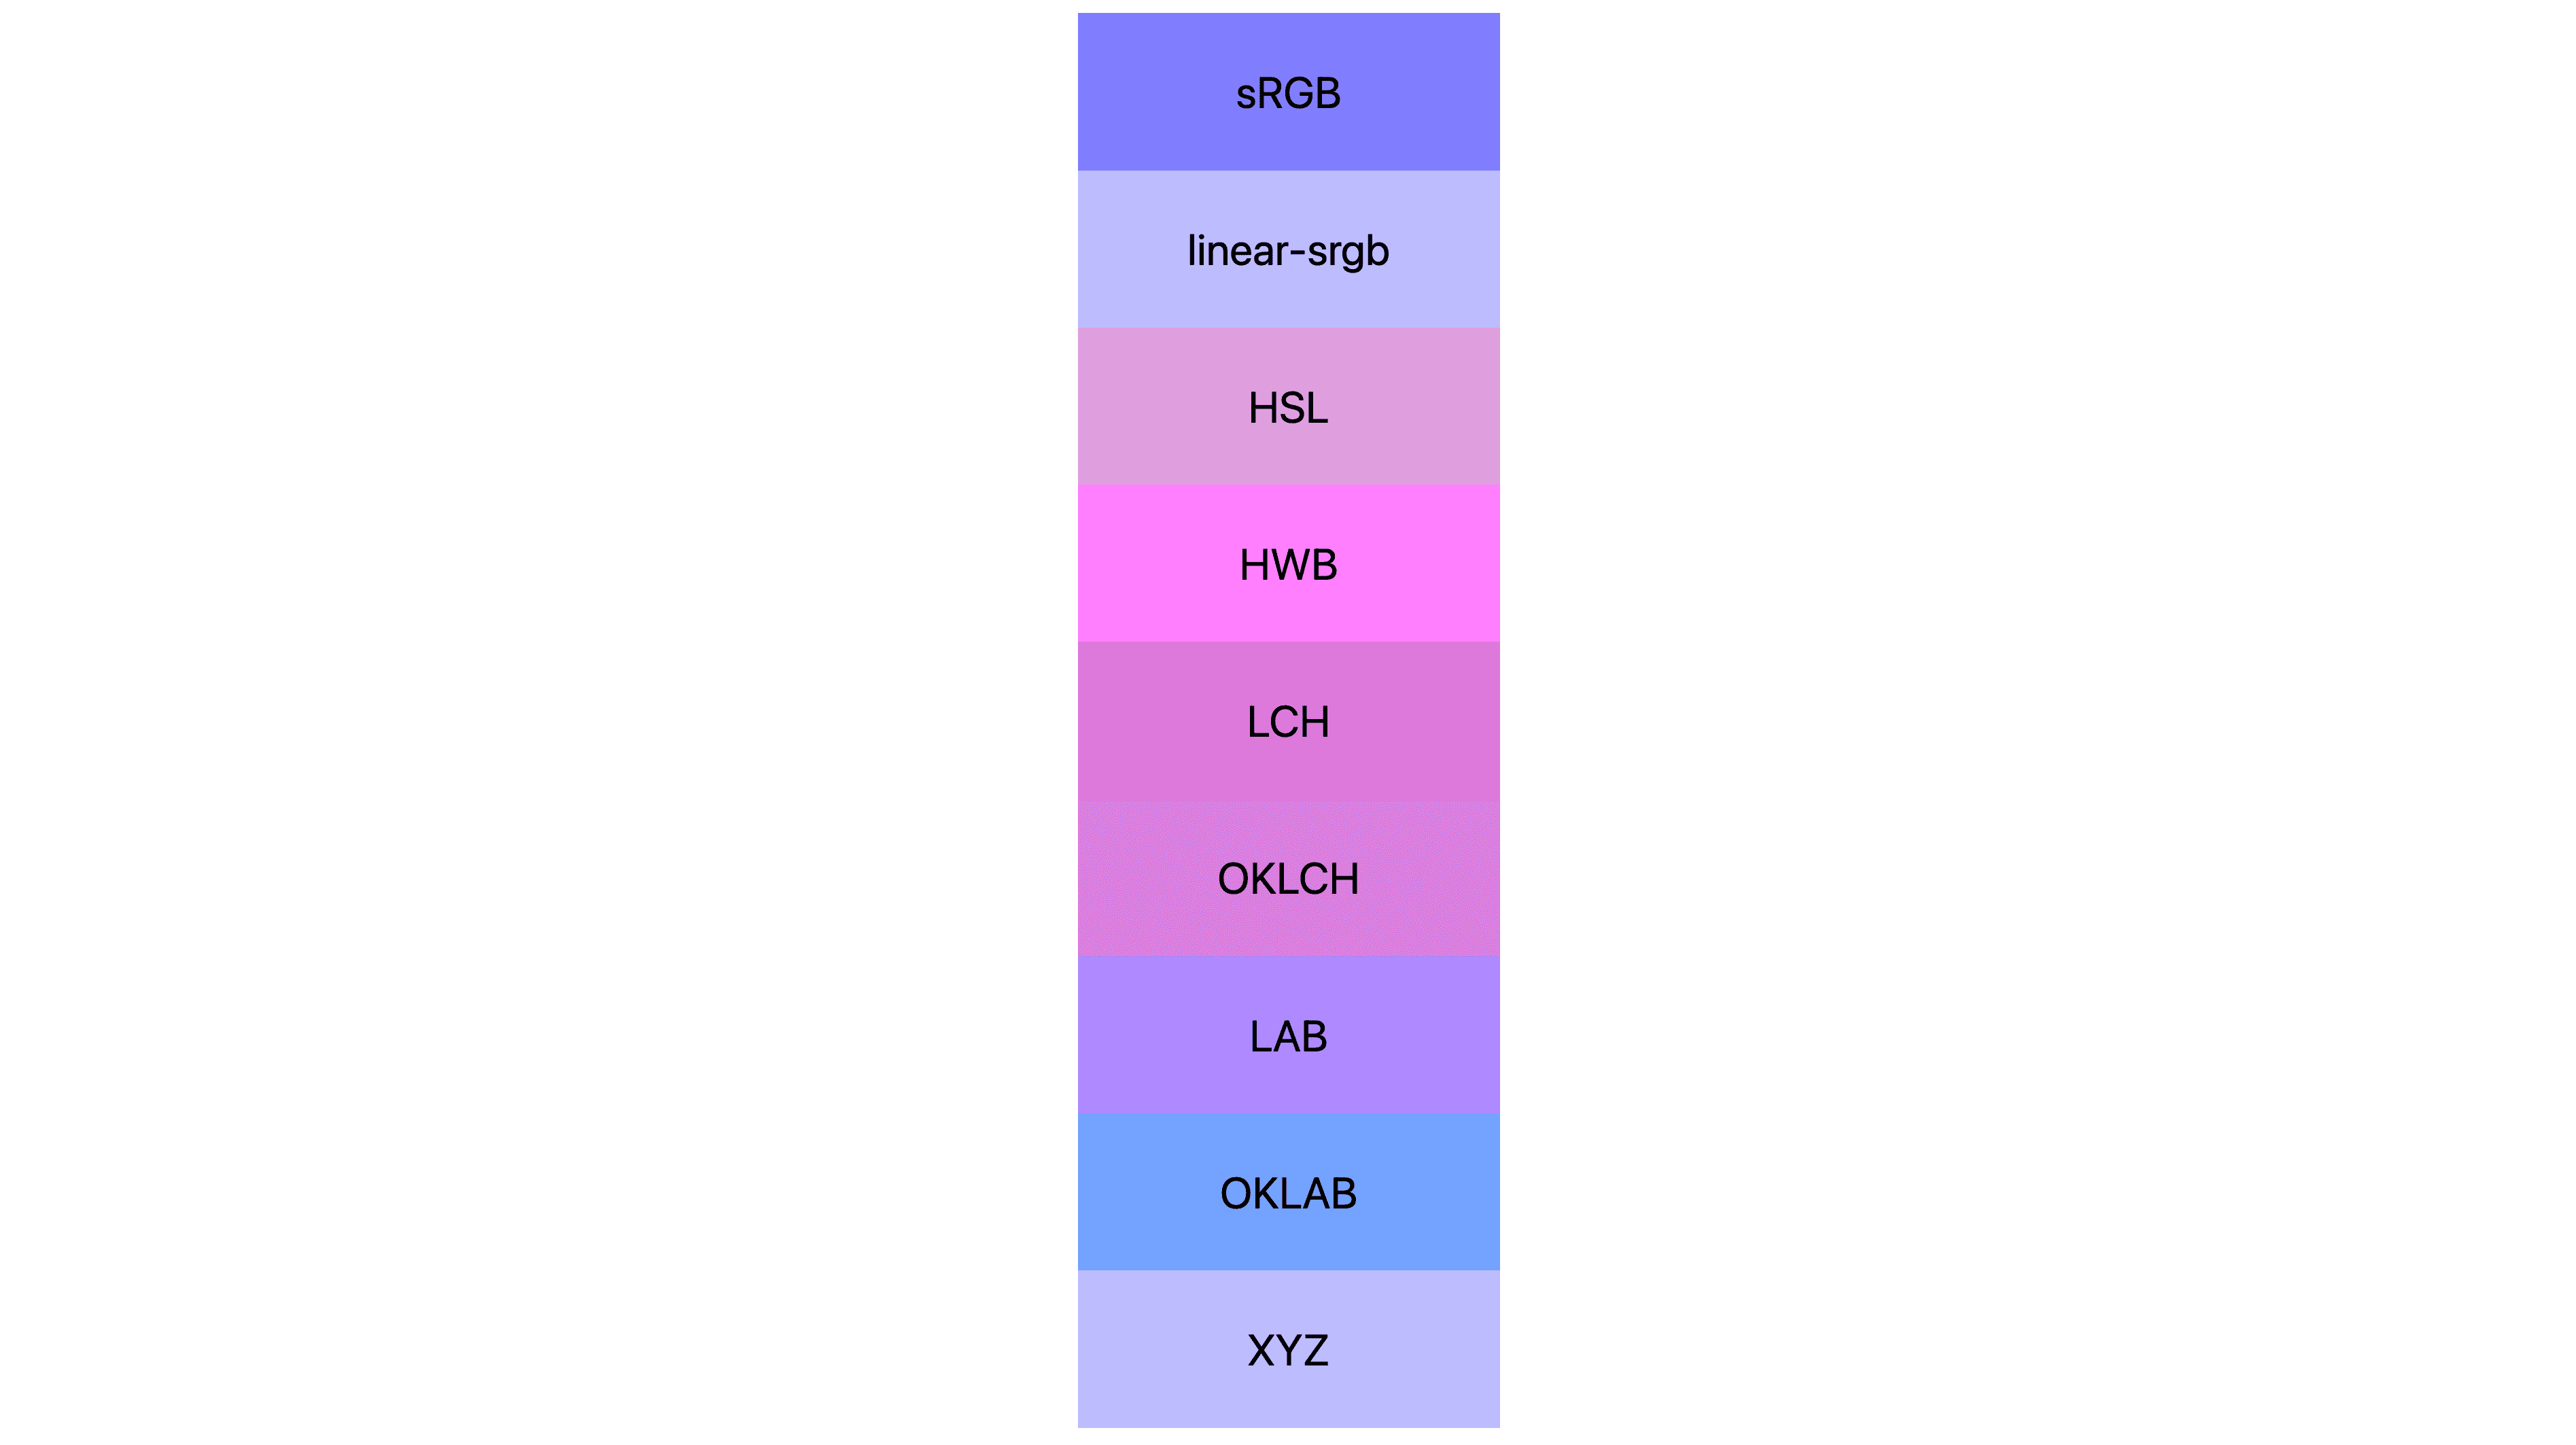 W przypadku 7 przestrzeni kolorów (srgb, linear-srgb, lch, oklch, lab, oklab, xyz) dało inne wyniki. Wiele z nich jest różowych lub fioletowych, ale niewiele jest tak naprawdę niebieskich.